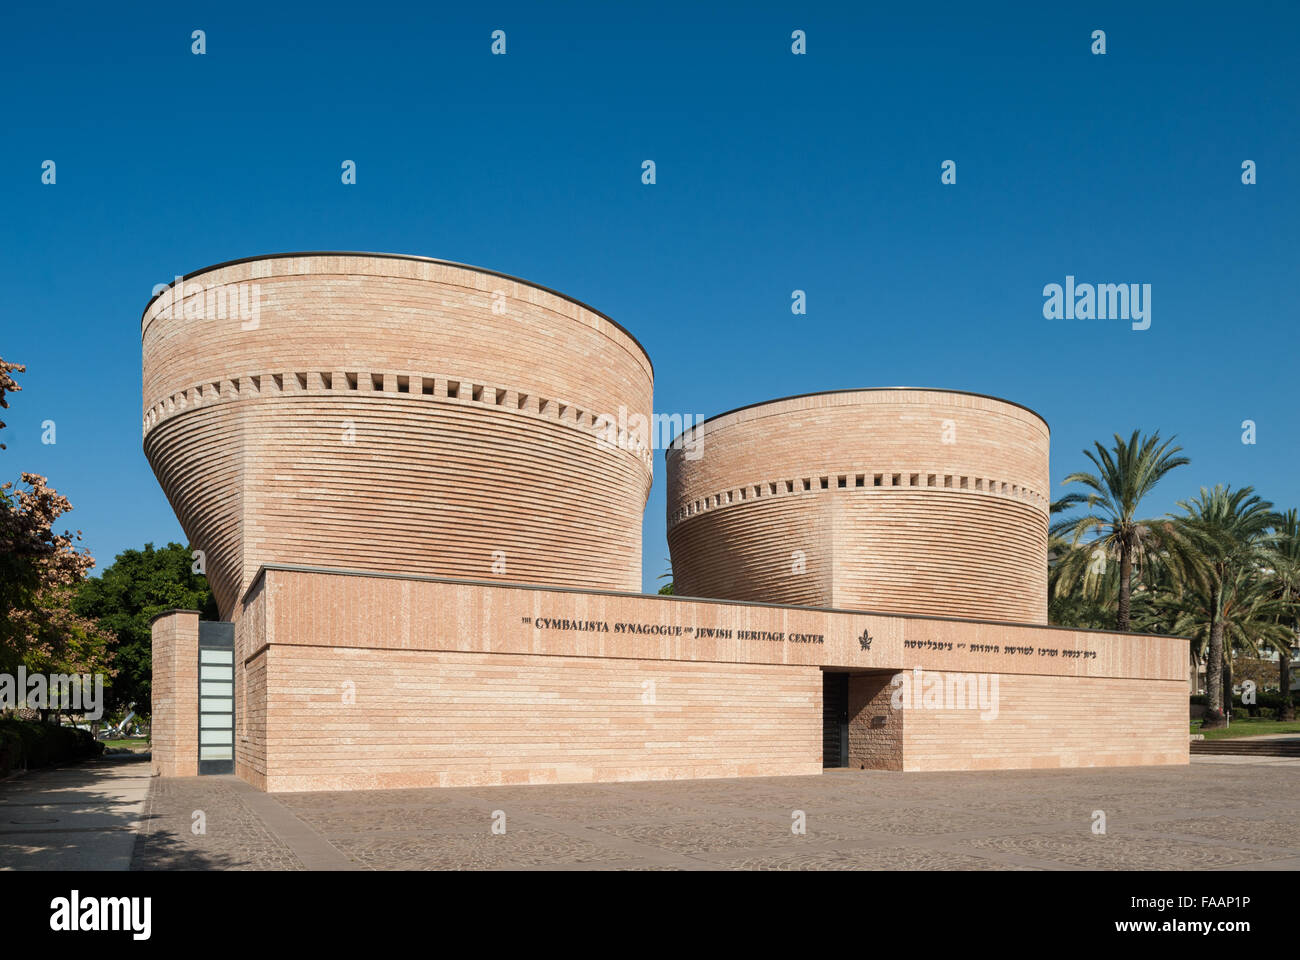 Israël, Tel Aviv, Ramat Aviv, université de Tel Aviv, Cymbalista Synagogue et Jewish Heritage Centre Banque D'Images